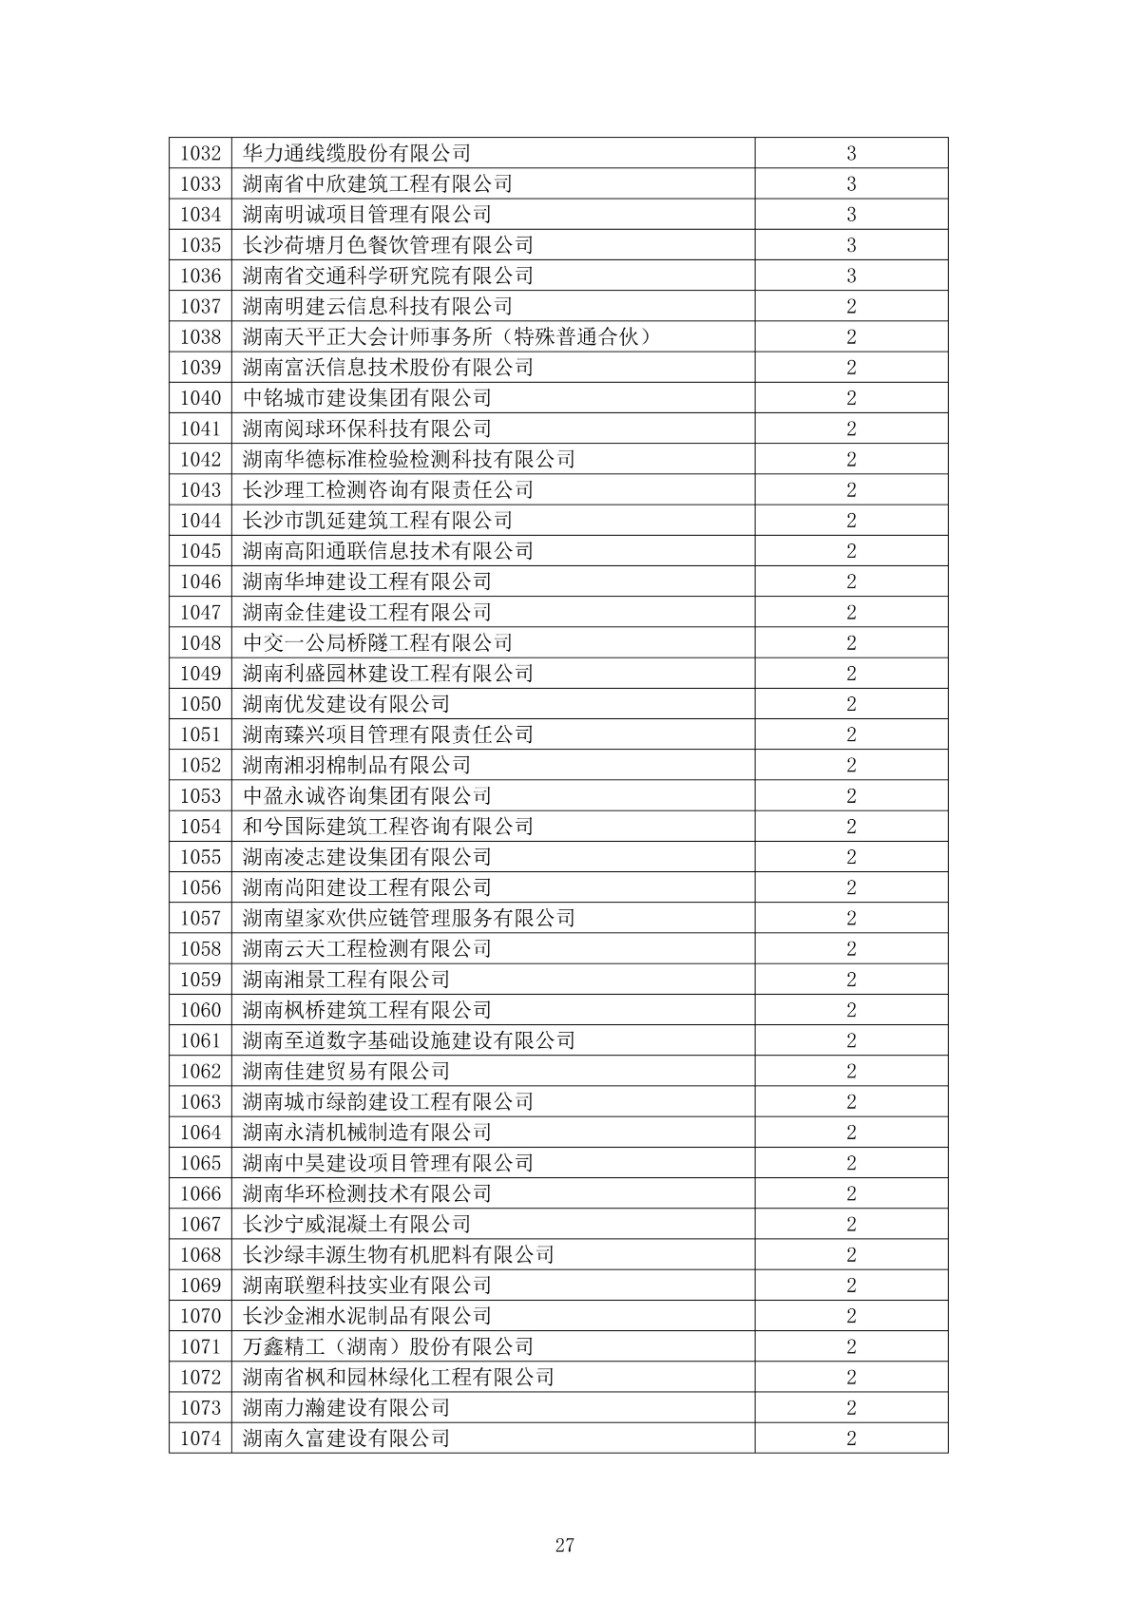 2021 年度湖南省守合同重信用企业公告_27.jpg